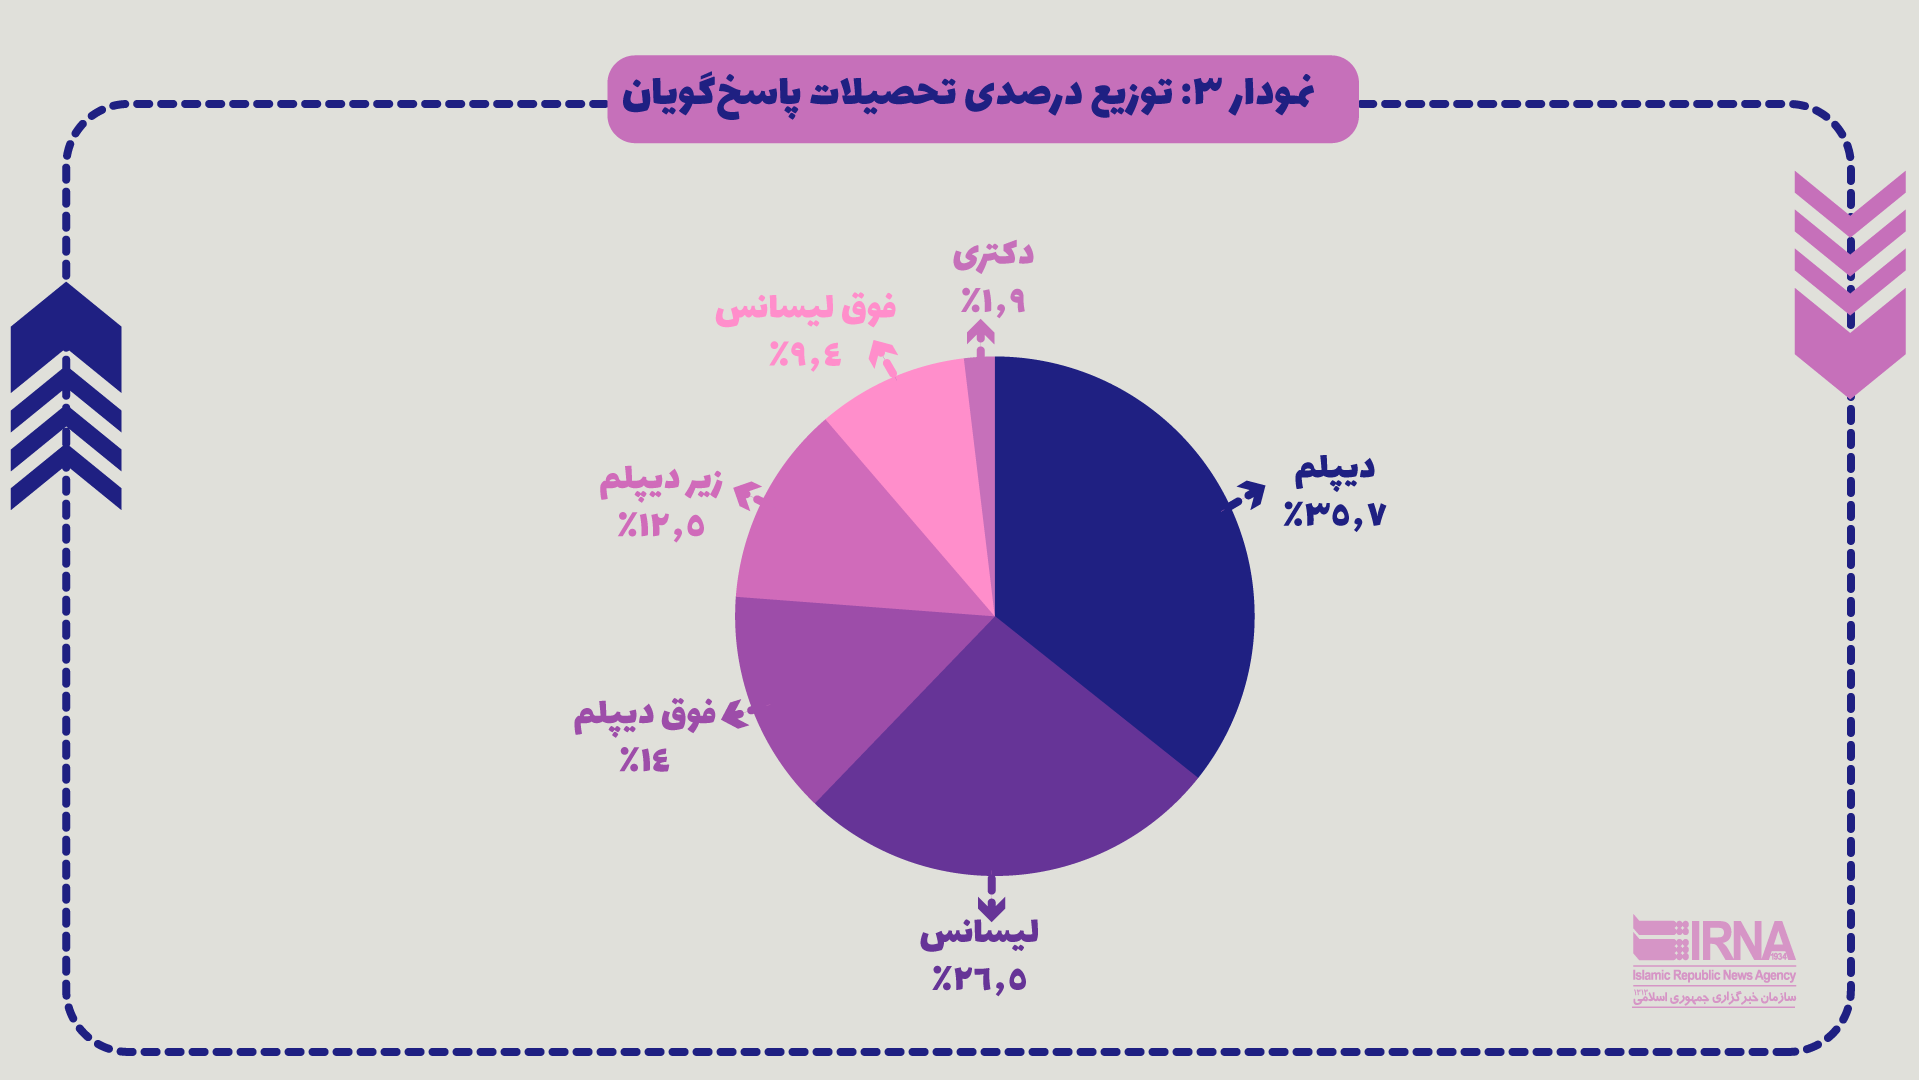 ۴۲.۸ درصد از تهرانی‌ها، مهاجران افغان را عامل بروز مشکلات شغلی برای ایرانیان می‌دانند